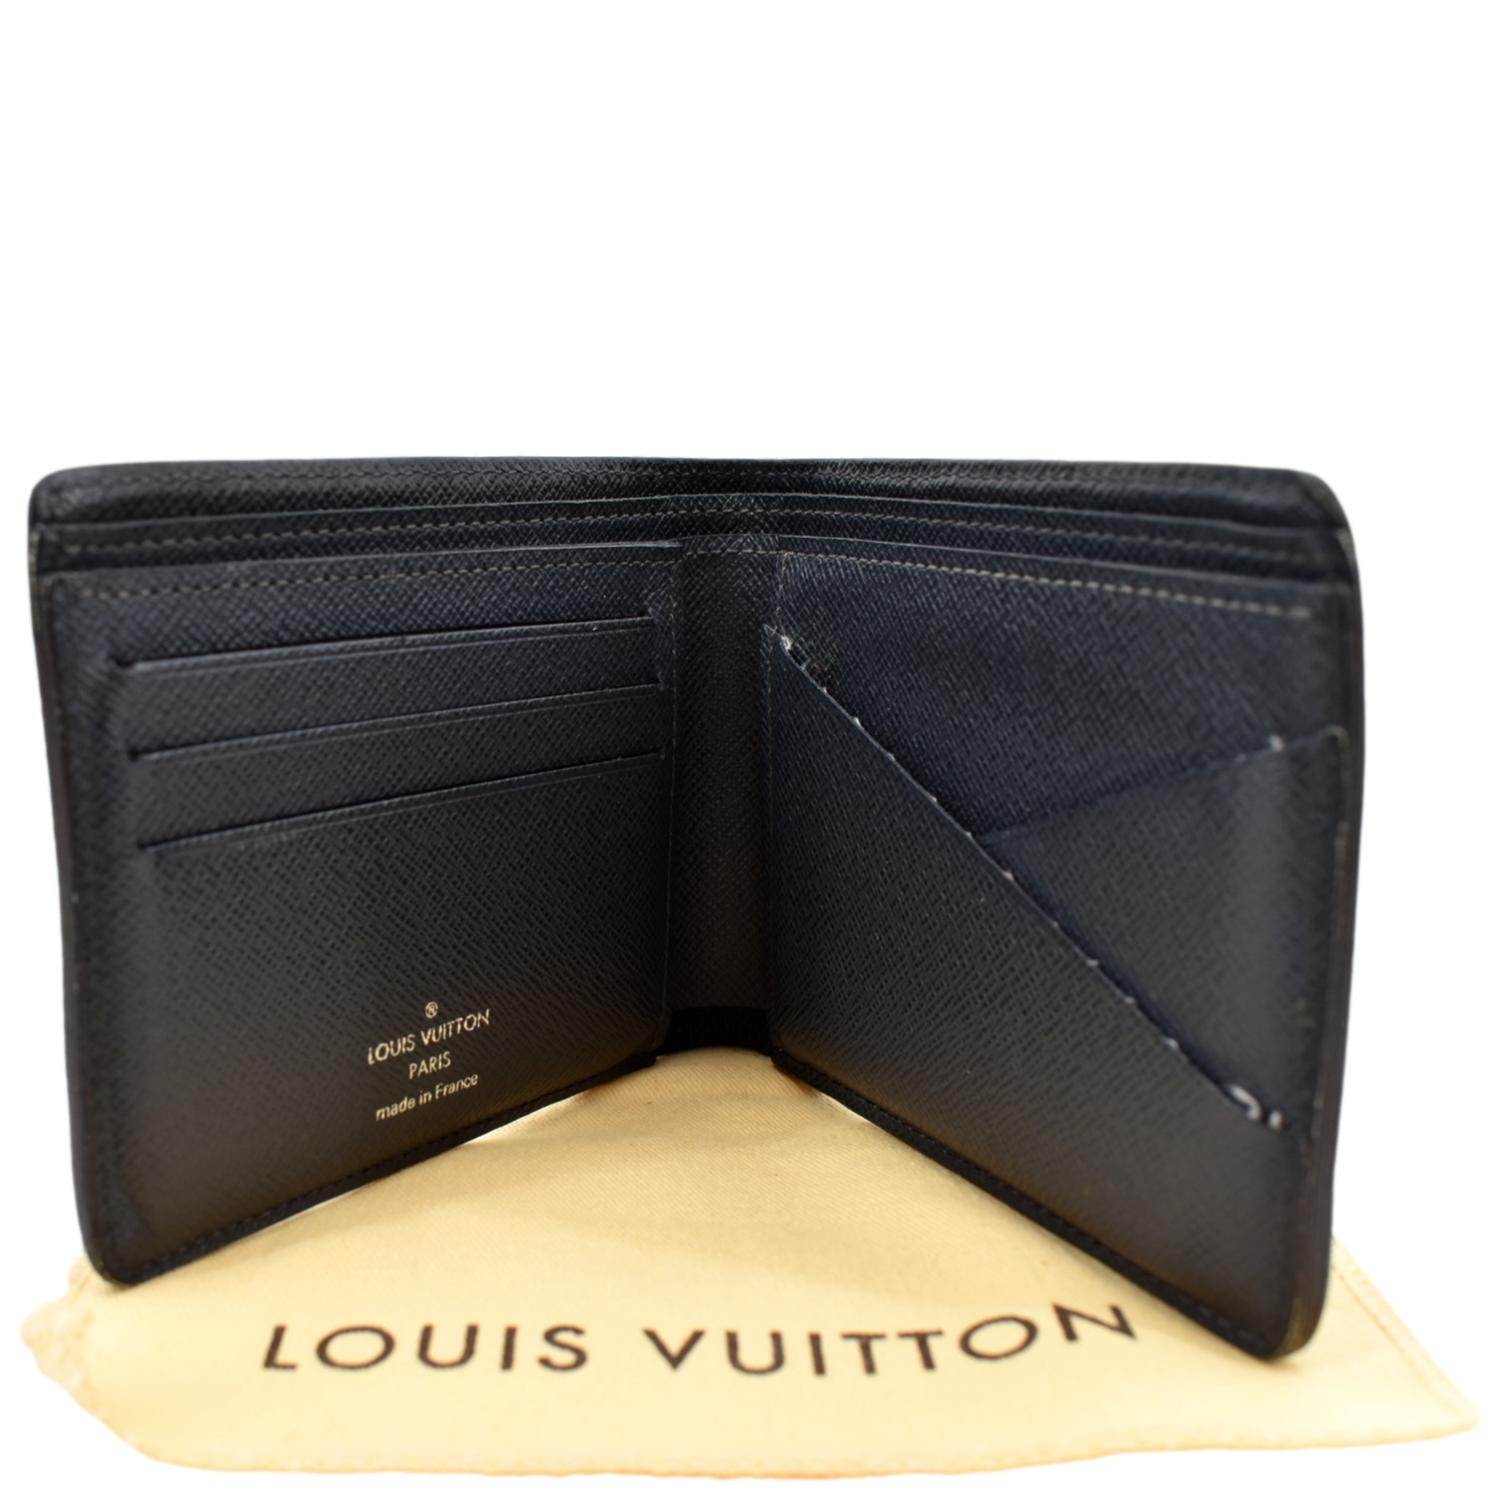 Louis Vuitton 2017 Epi Leather Multiple Wallet - Black Wallets, Accessories  - LOU795108